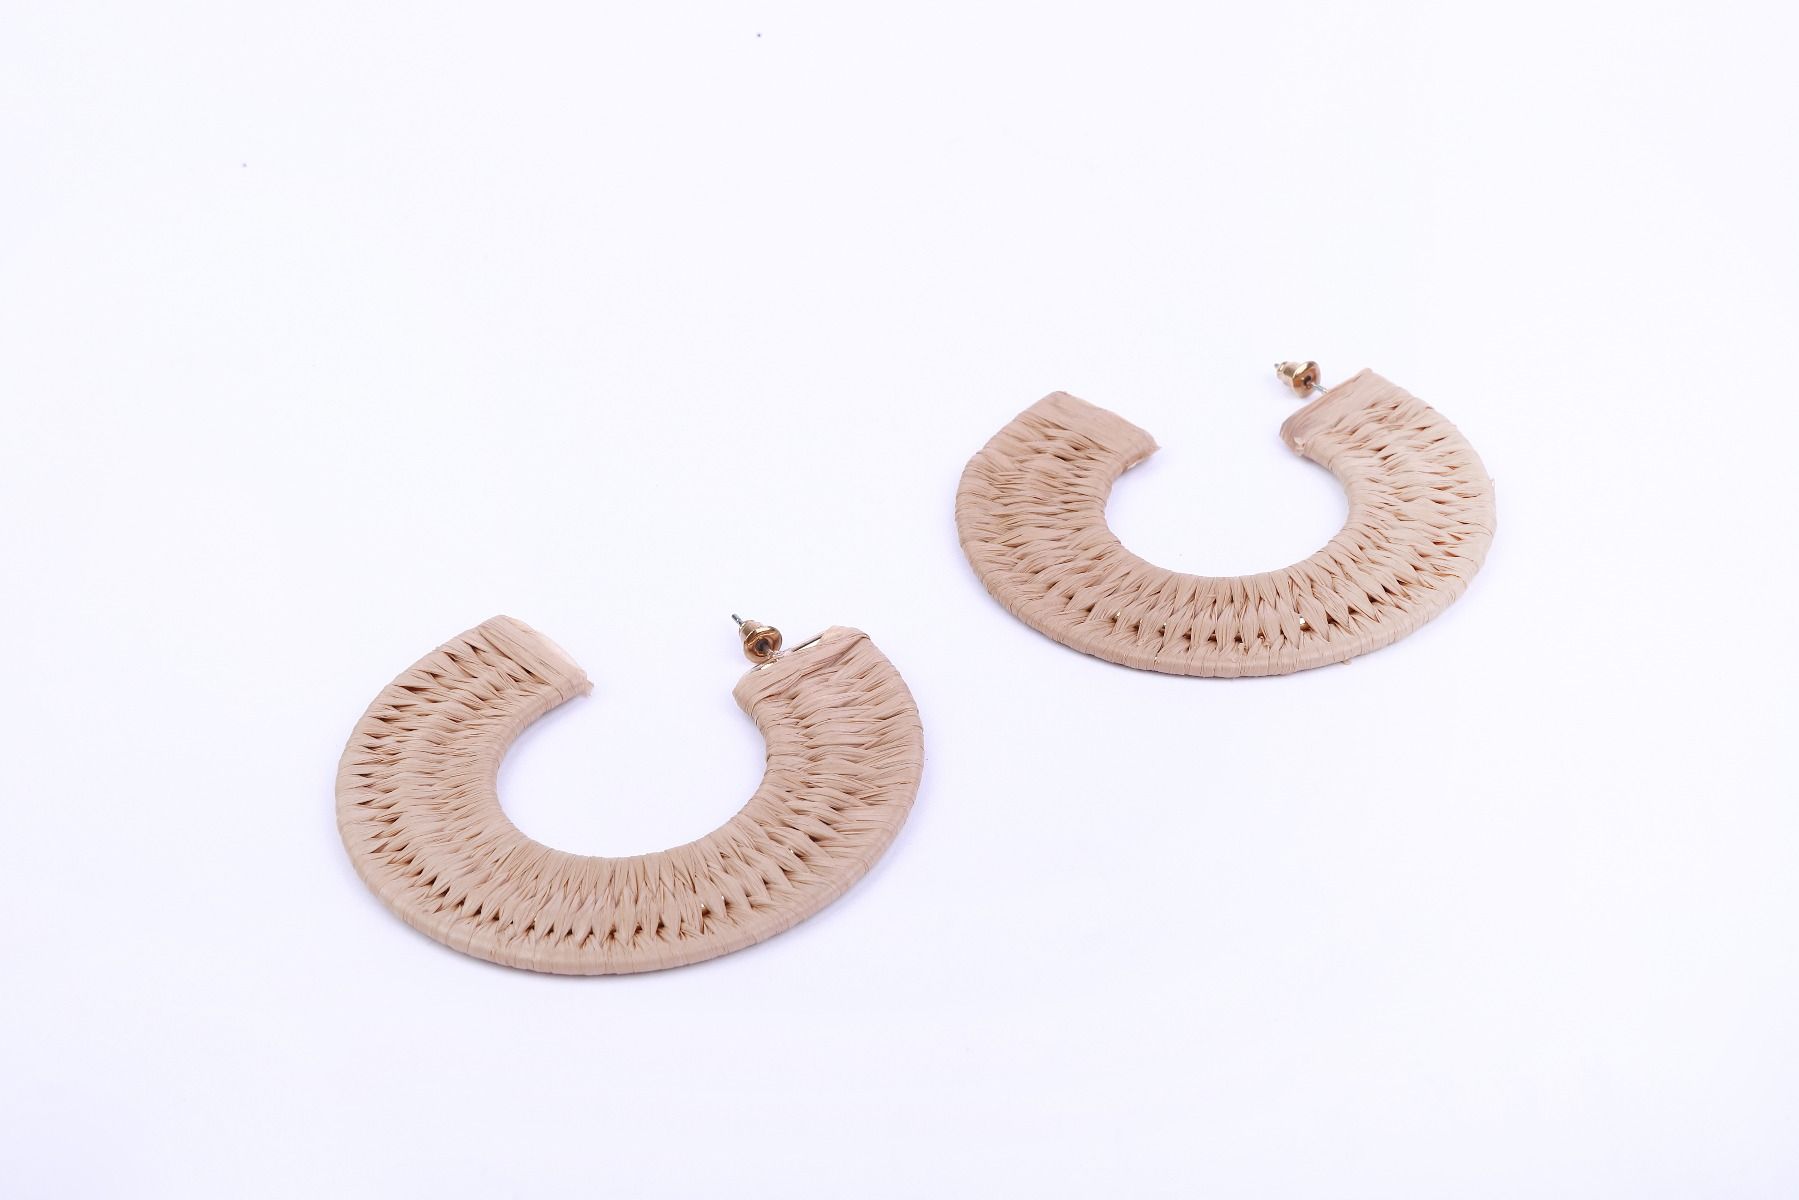 Woven straw earrings